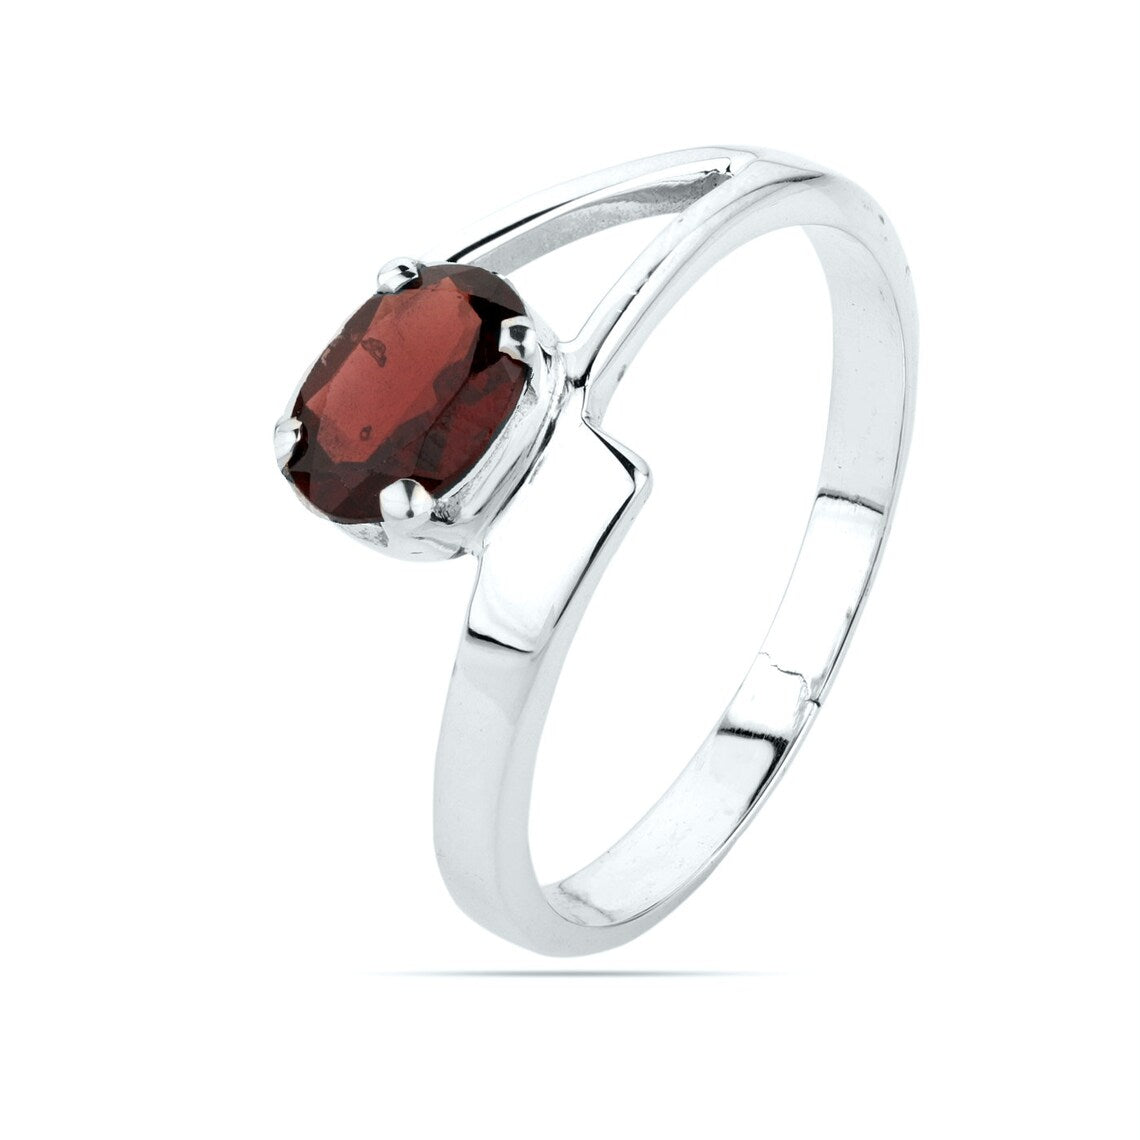 Natural Red Garnet Ring - Oval Garnet Ring-Handmade Silver Ring-Gift For Her-Promise Ring -Birthstone Ring